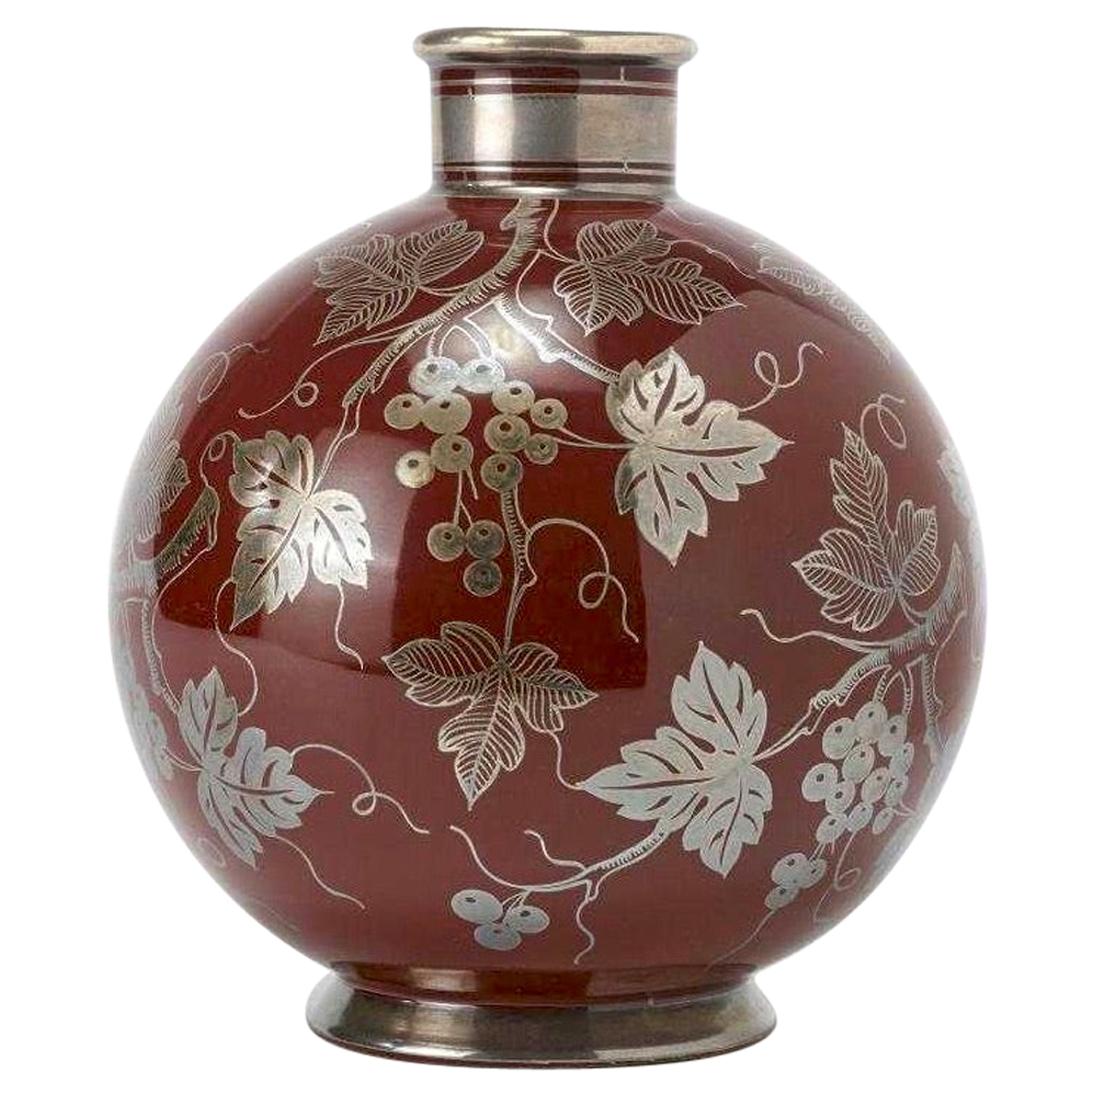 Gio Ponti's Globular Vase in Red Majolica for Richard Ginori, 1930s